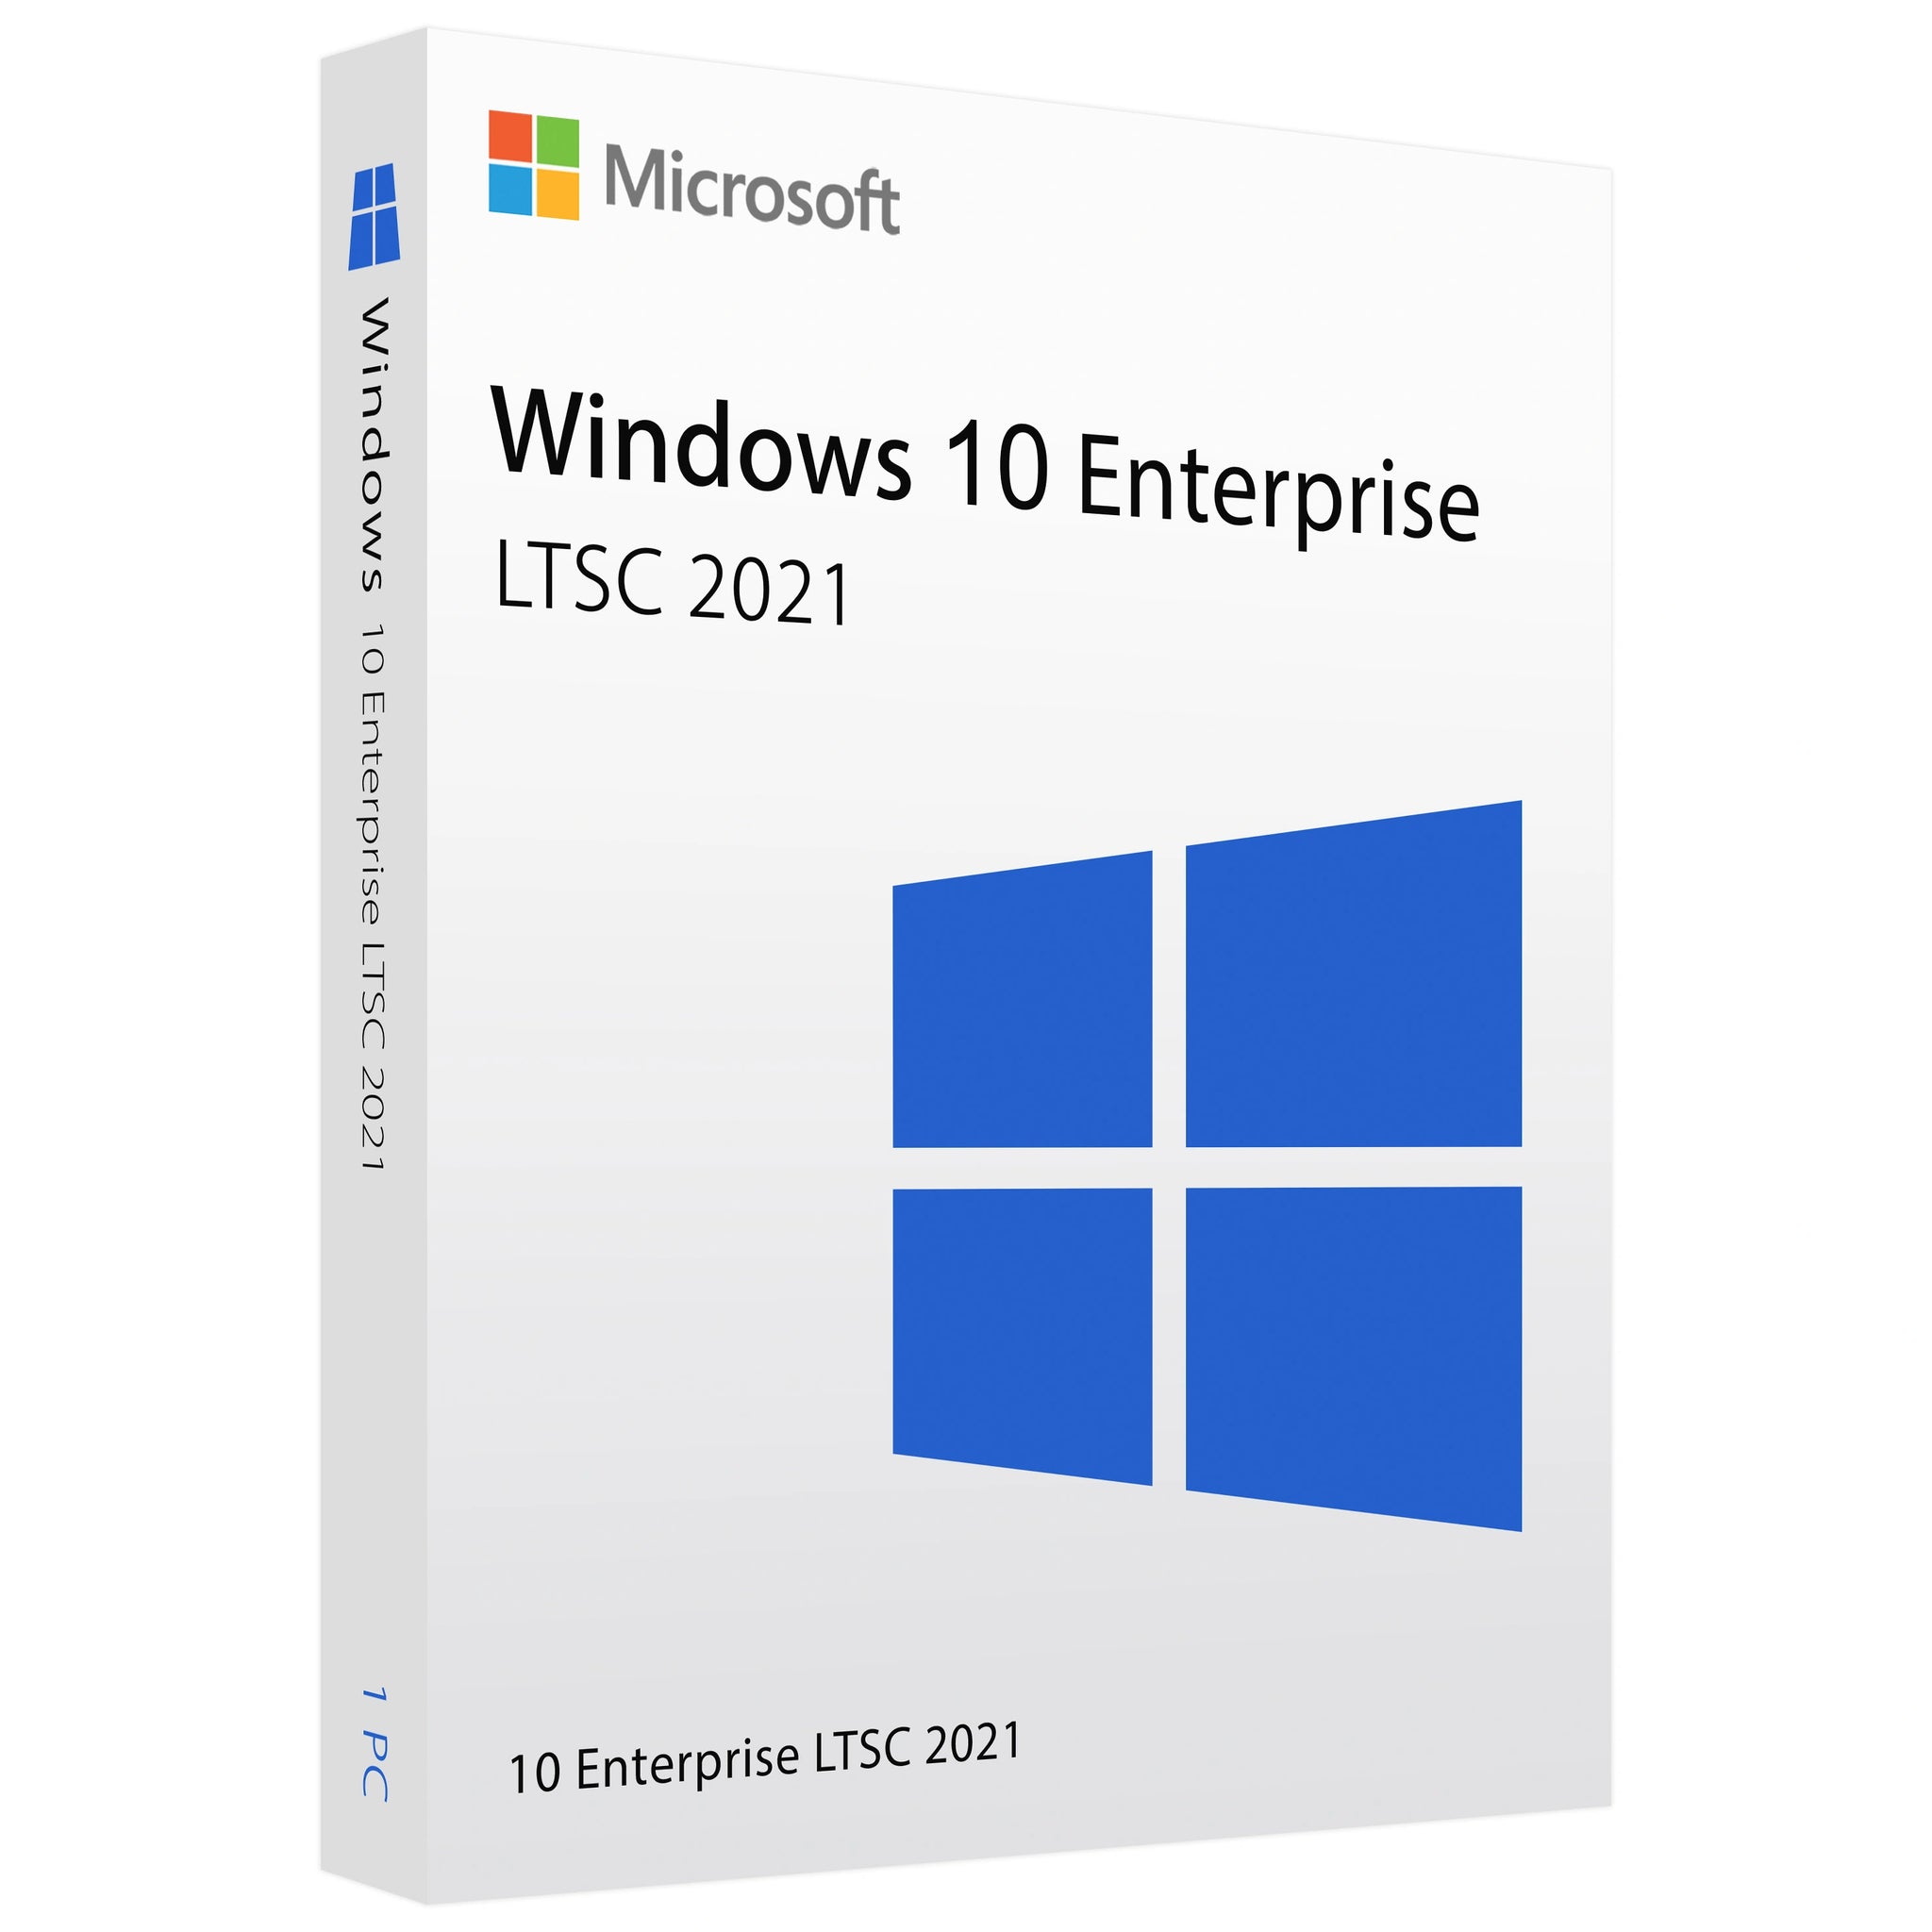 Microsoft Windows 10 Enterprise LTSC 2021 - Lifetime License Key for 1 PC